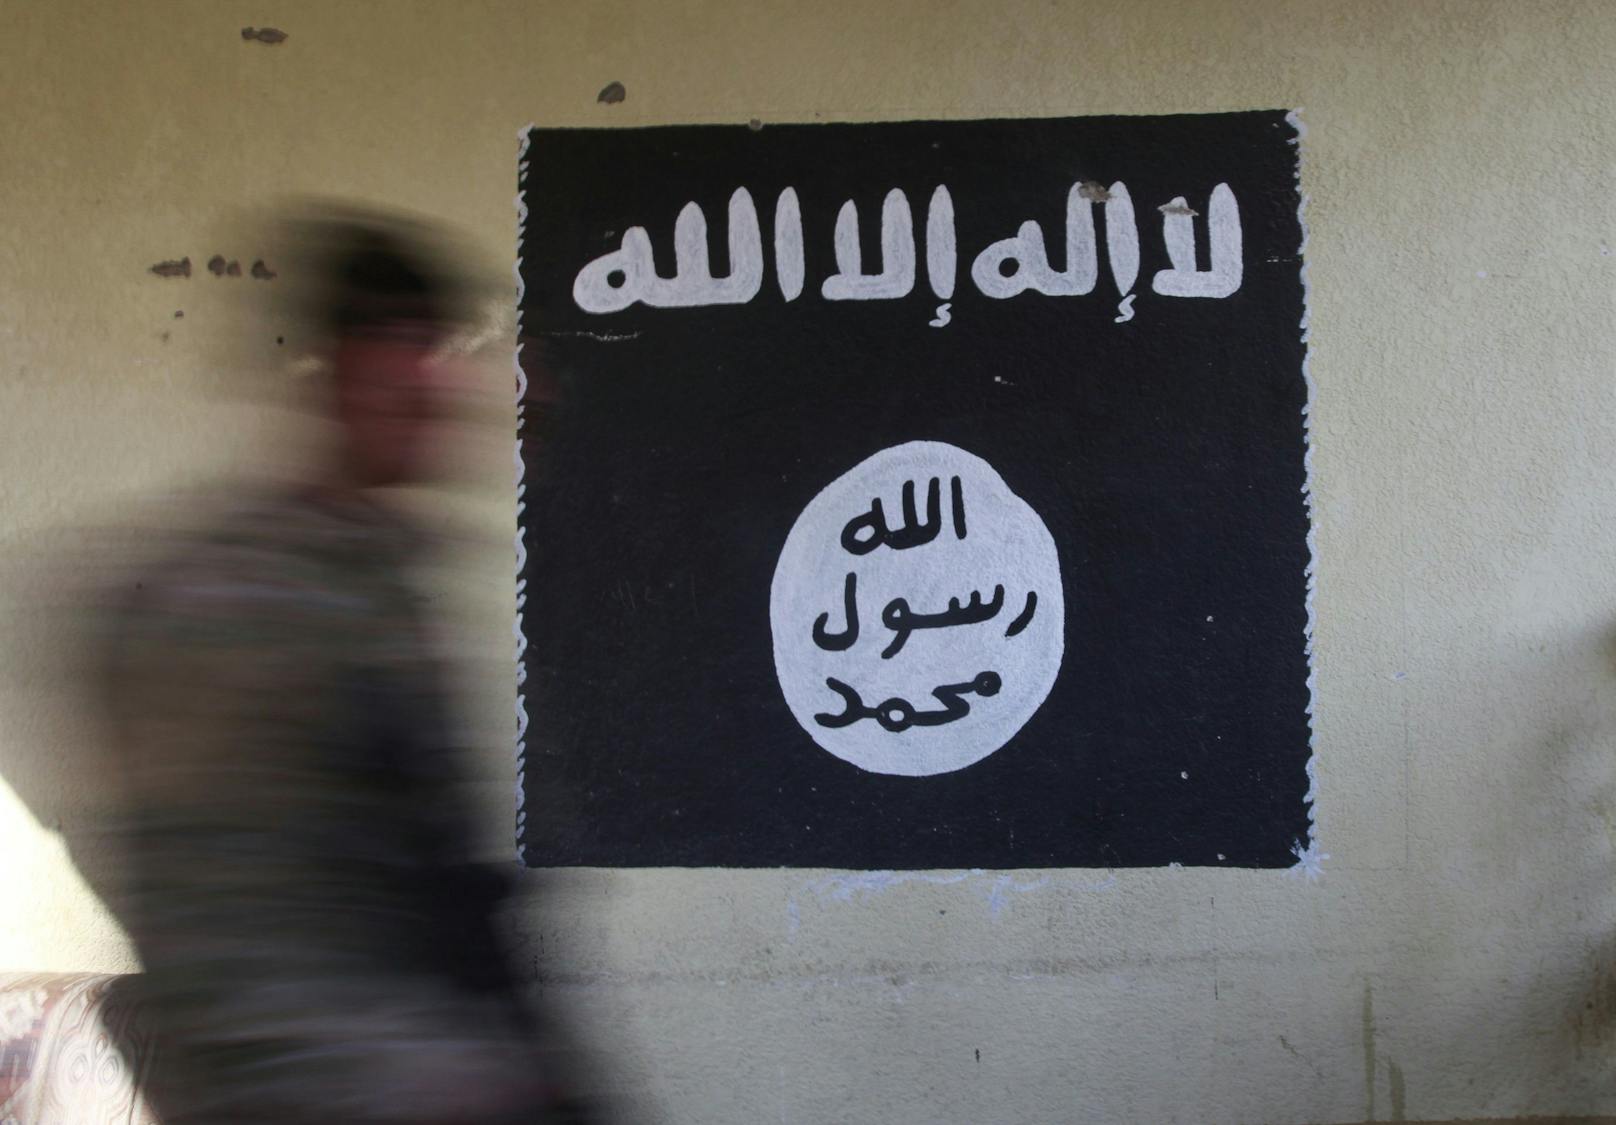 Ein hochrangiges Mitglied der Terrormiliz "Islamischer Staat" wurde nun durch eine US-Drohne getötet. Symbolbild.